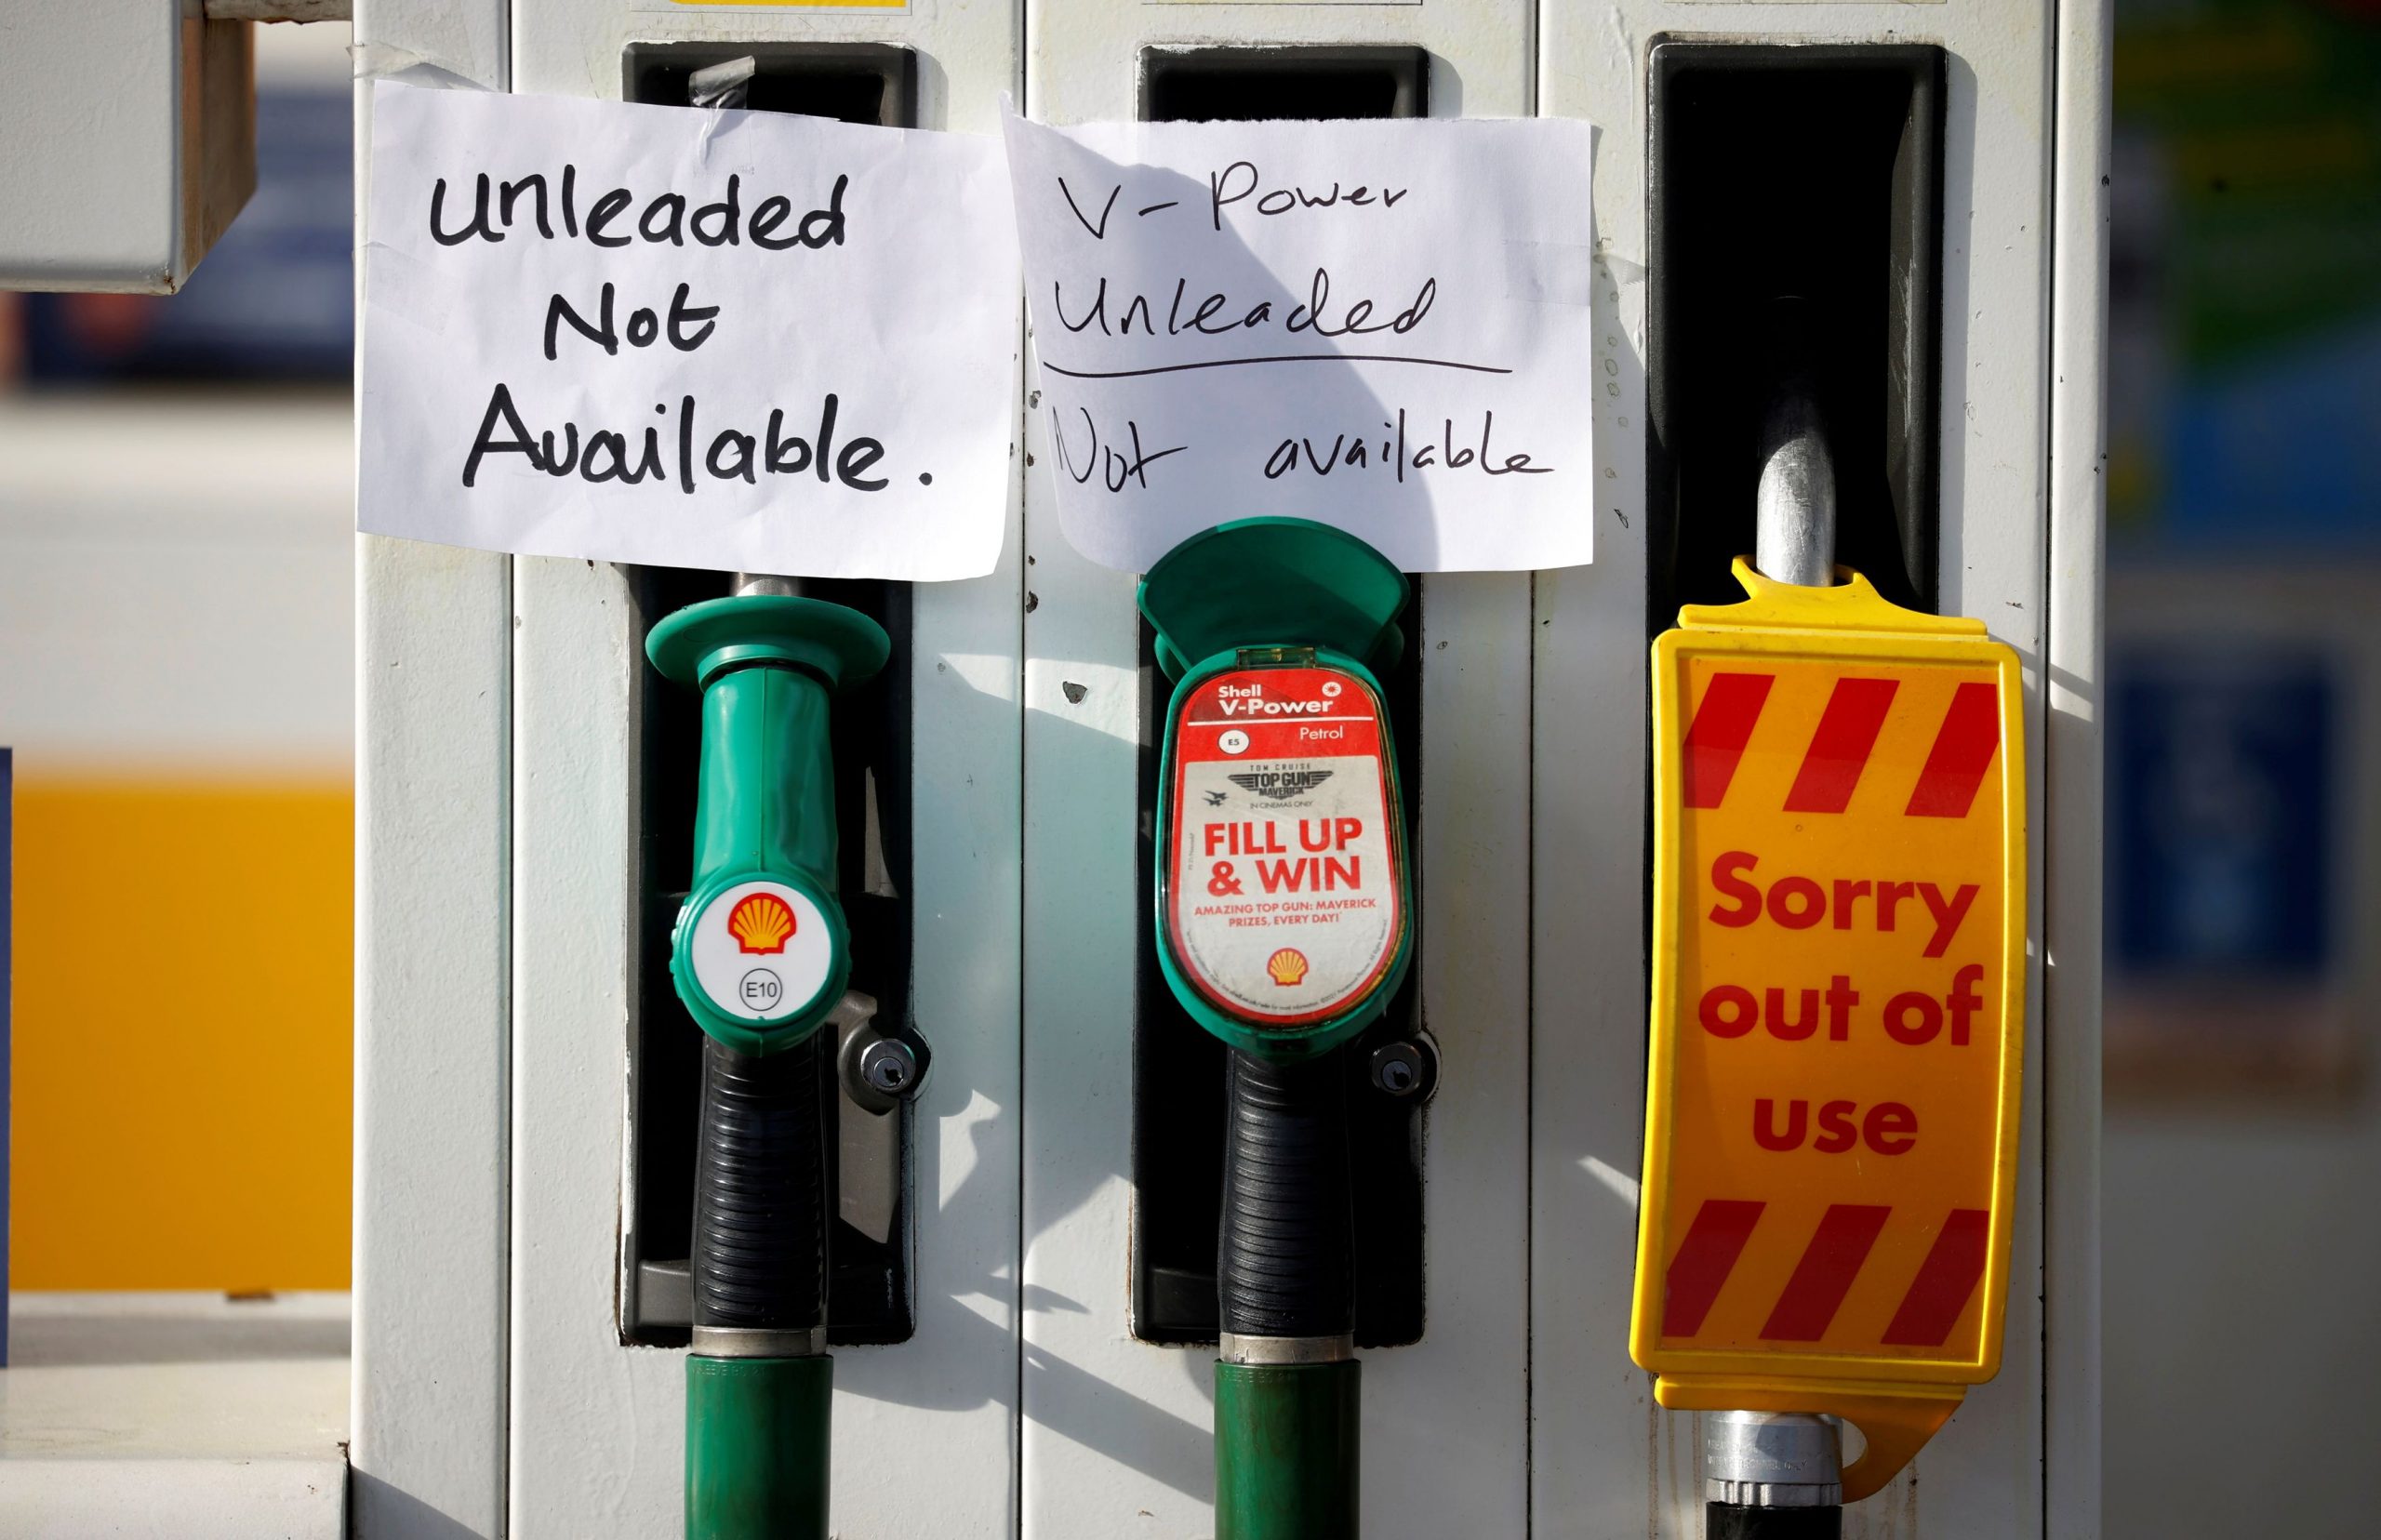 Βρετανία – «Στέρεψε» από καύσιμα ένα στα τρία πρατήρια της BP